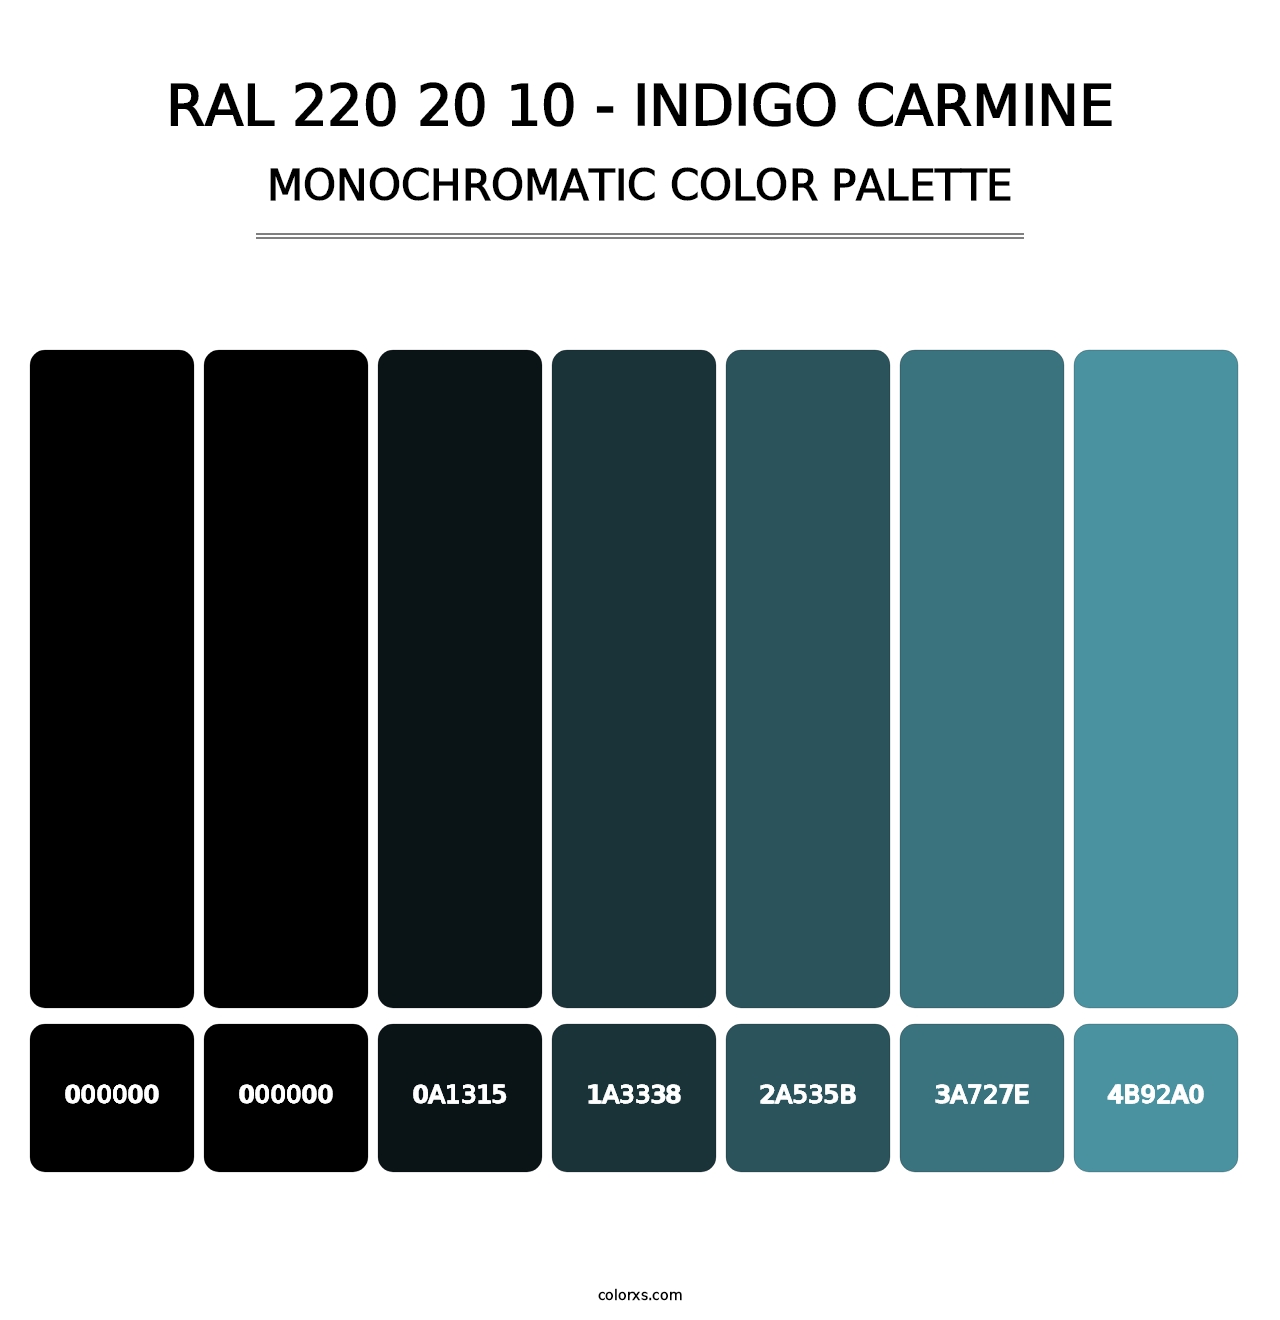 RAL 220 20 10 - Indigo Carmine - Monochromatic Color Palette